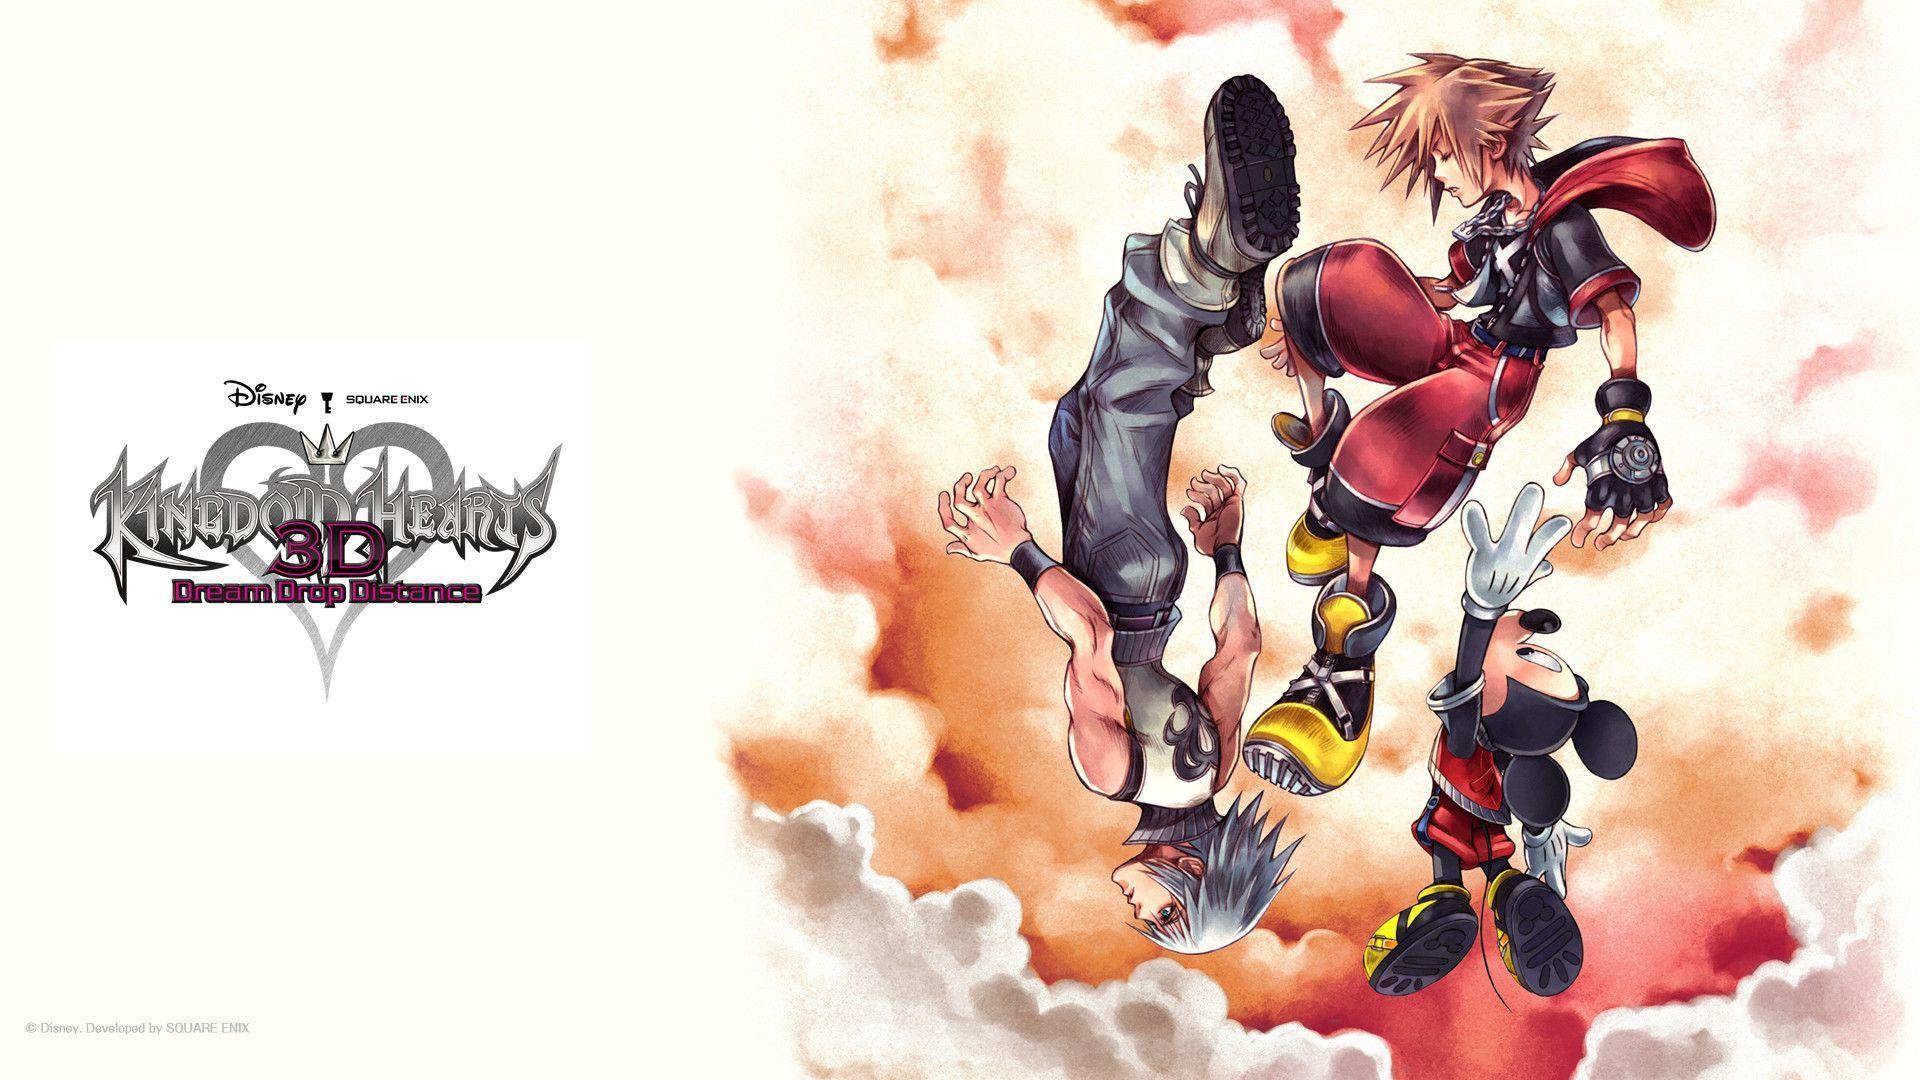 Kingdom Hearts 3 Game wallpaper. Top HD Wallpaper